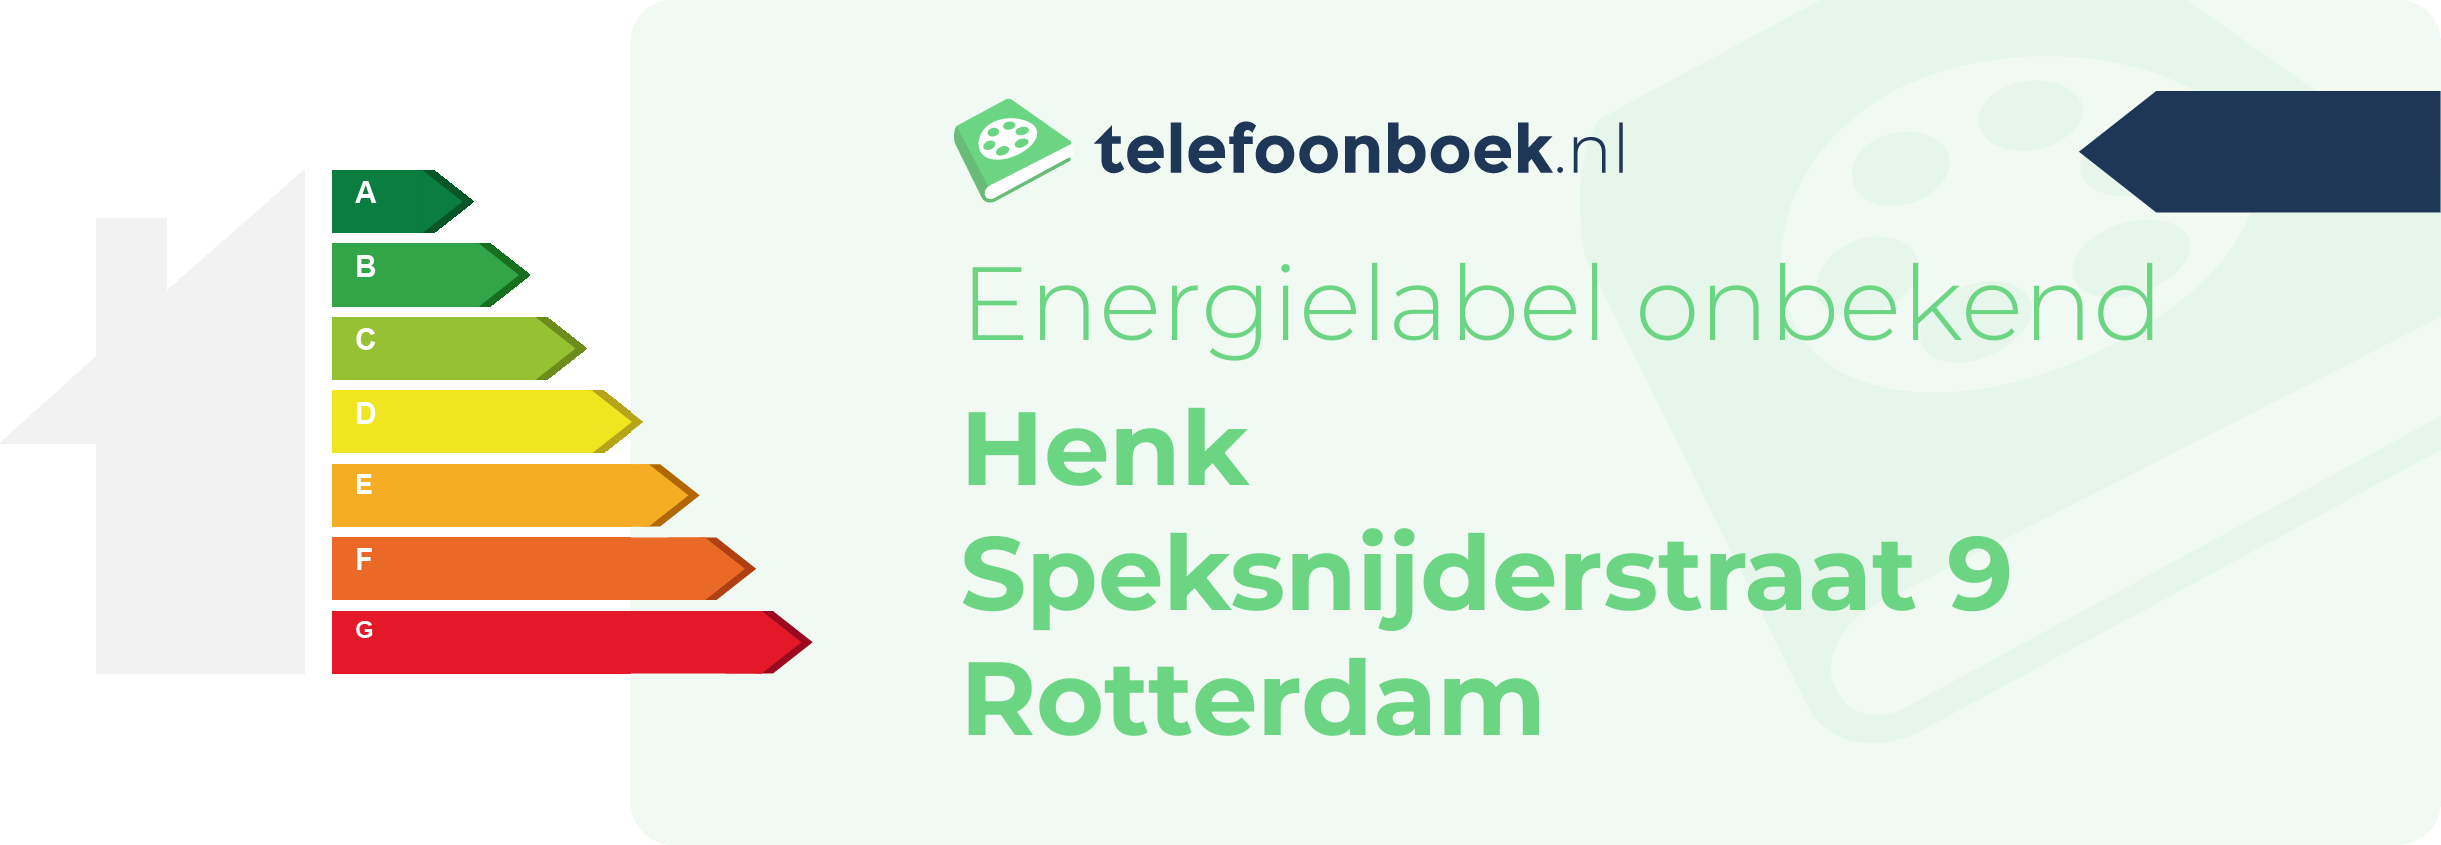 Energielabel Henk Speksnijderstraat 9 Rotterdam